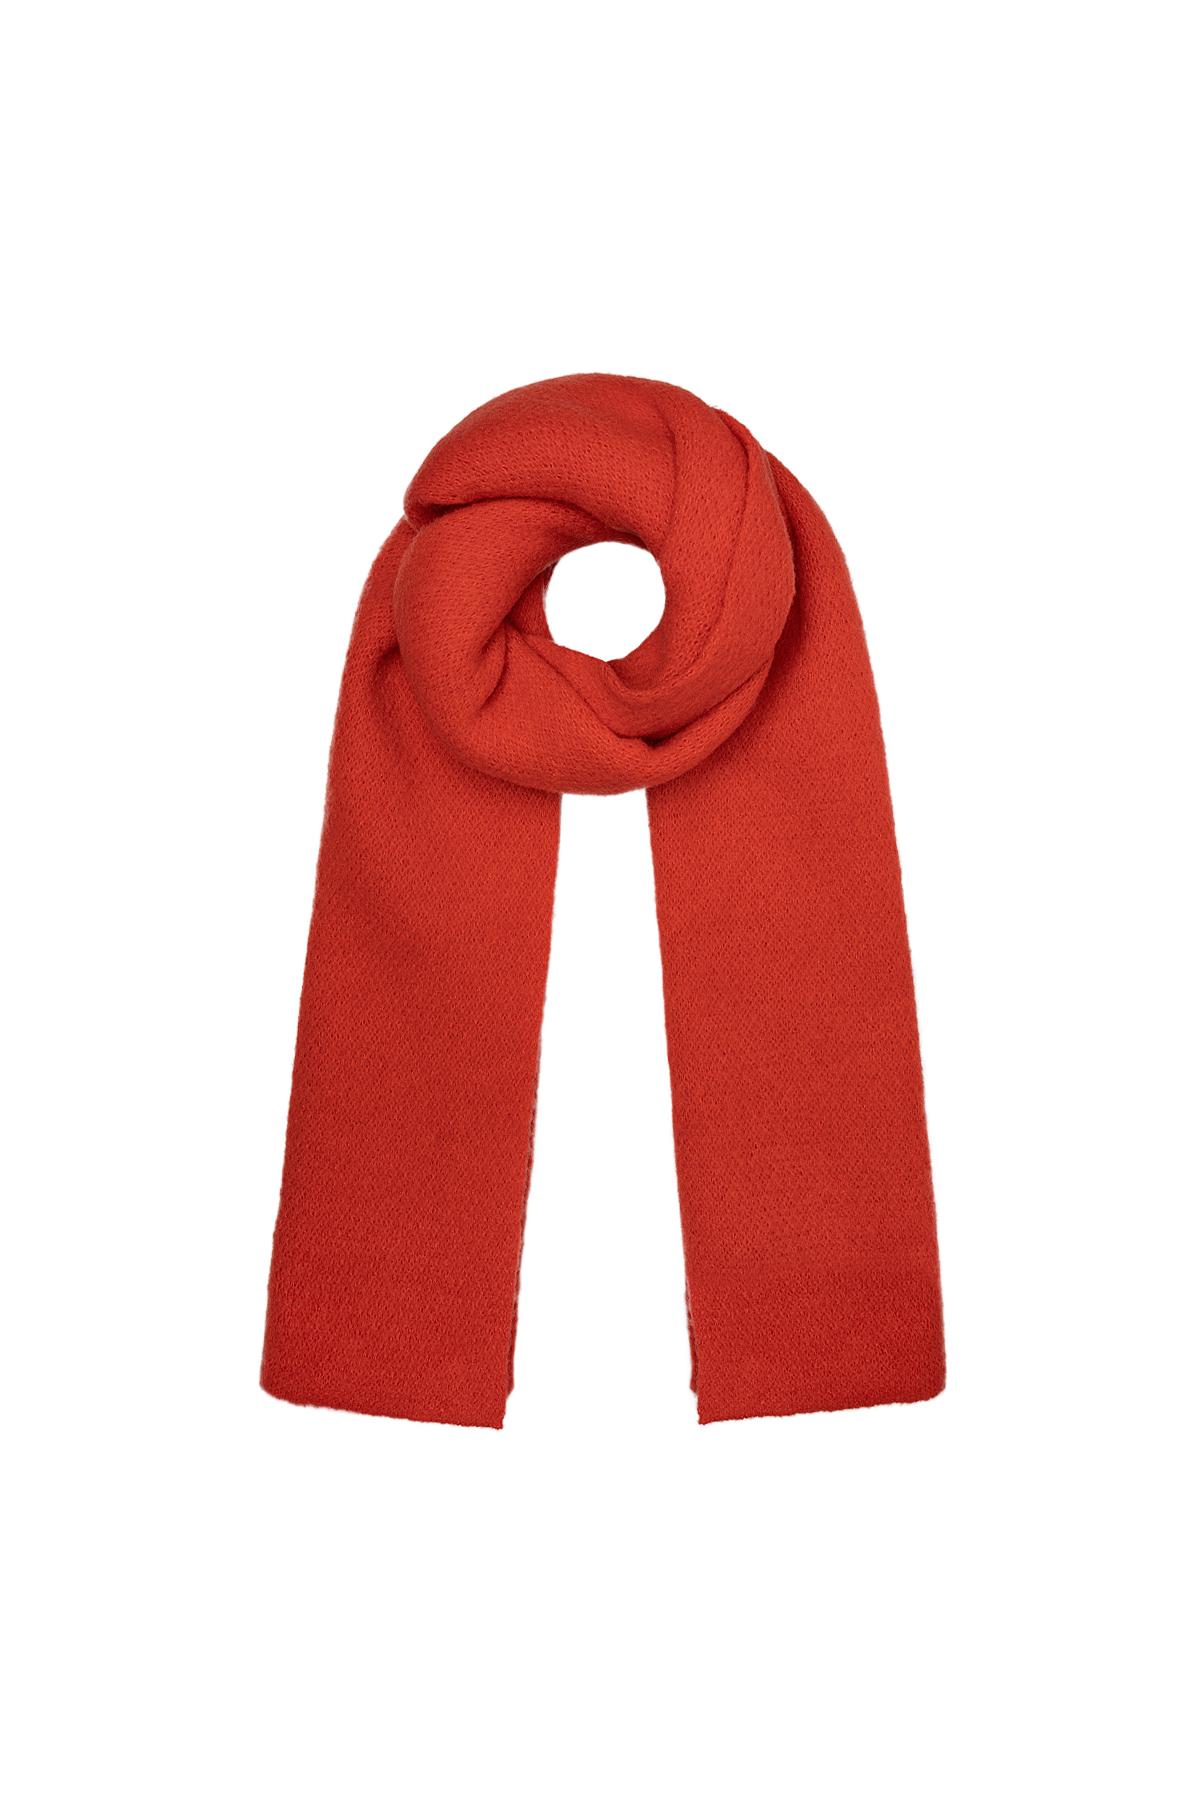 Morbida sciarpa invernale in tinta unita rossa Red Polyester h5 